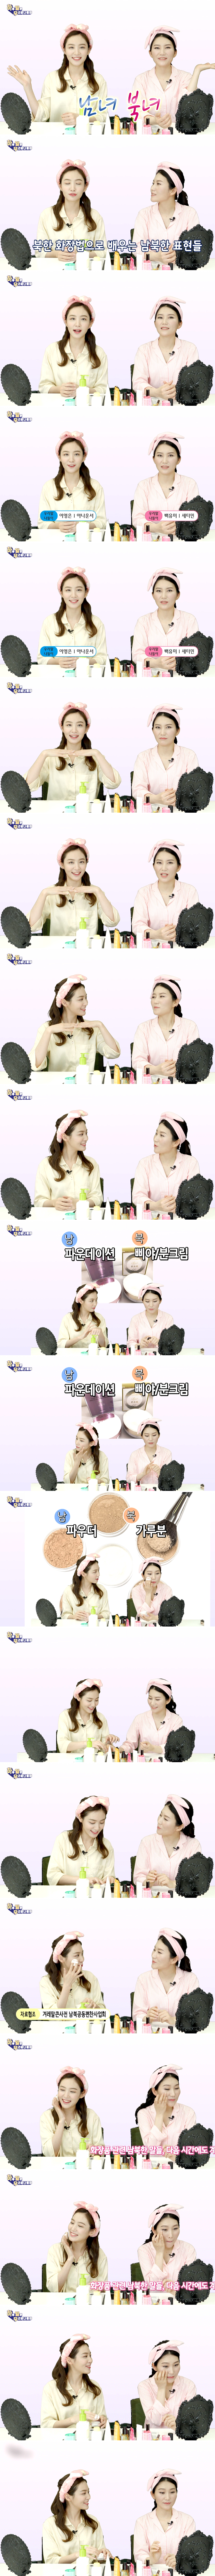 MBC 이영은 아나운서 - 우리말 나들이 2019/04/11 방송